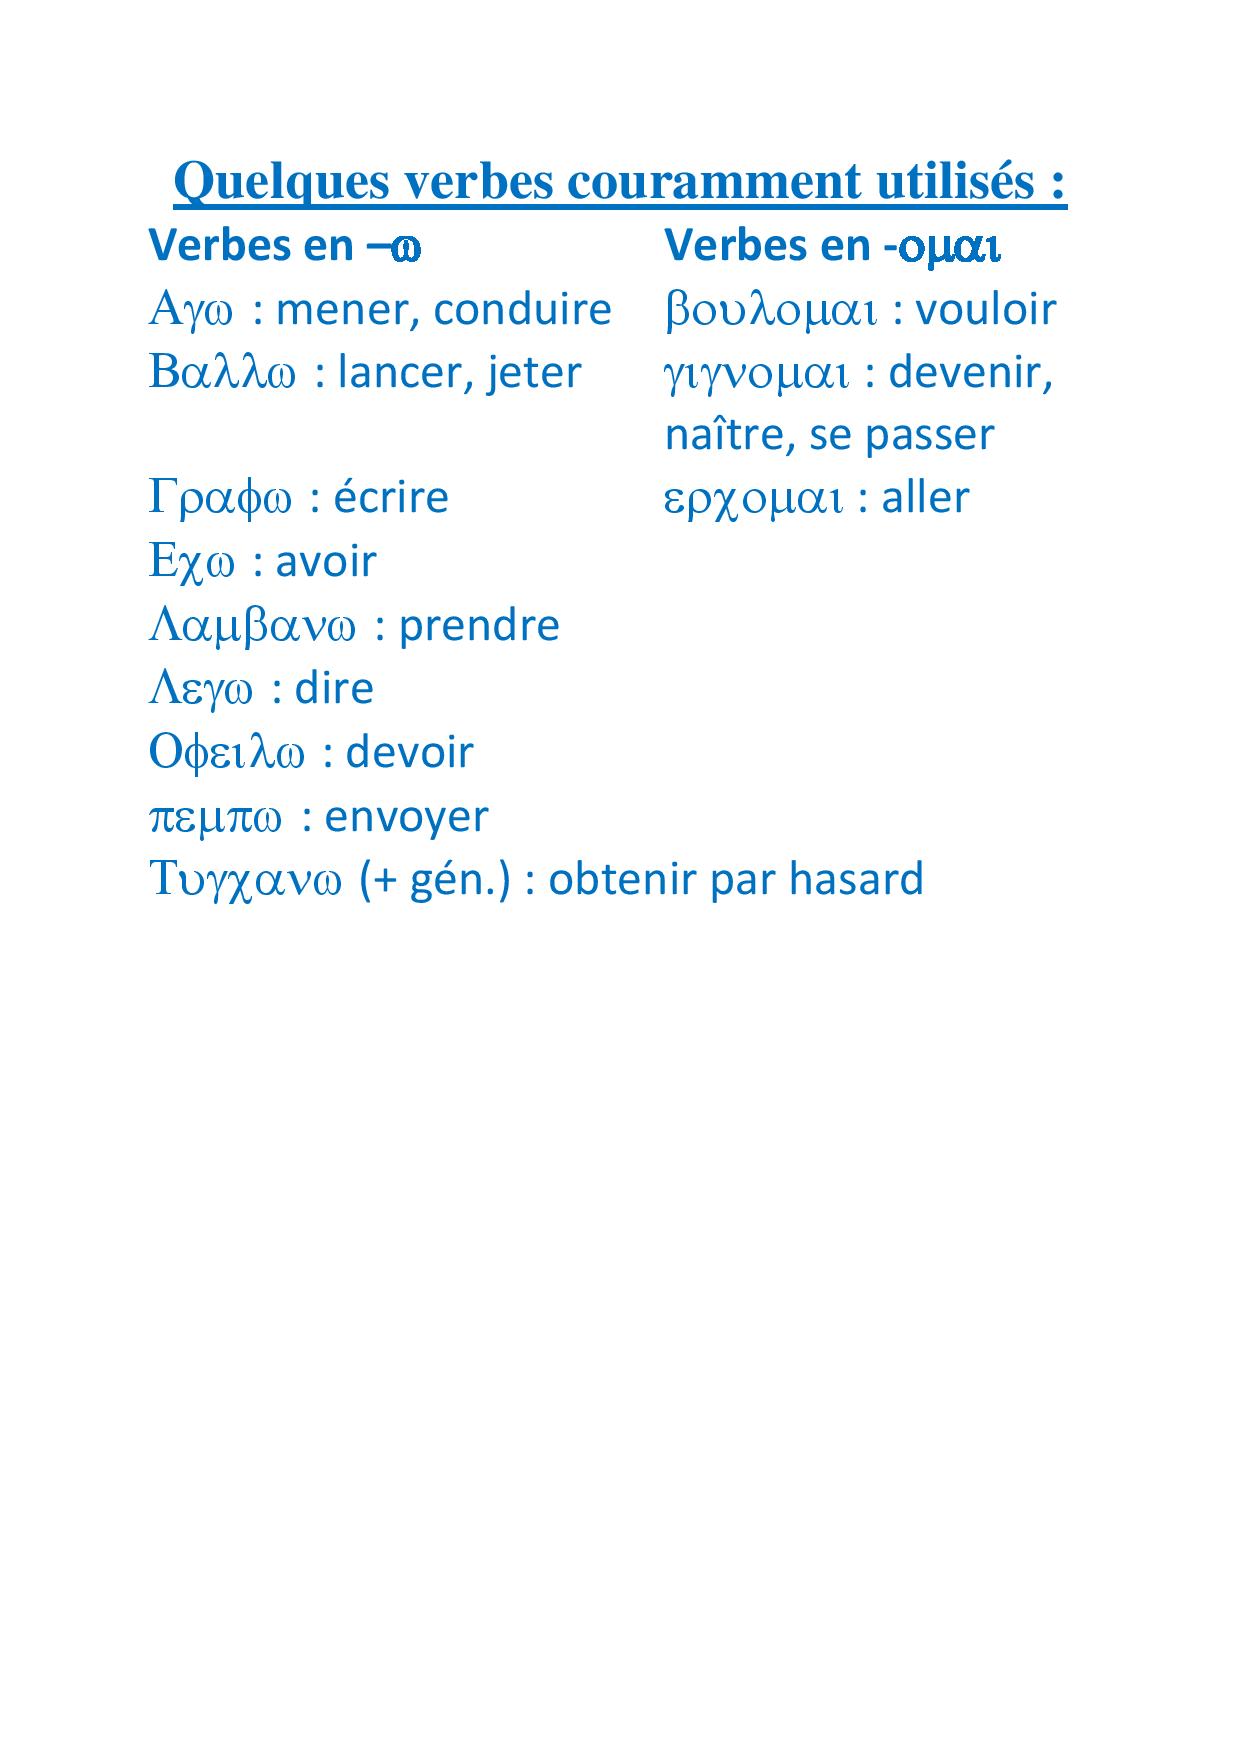 Quelques verbes couramment utilisés-page-001